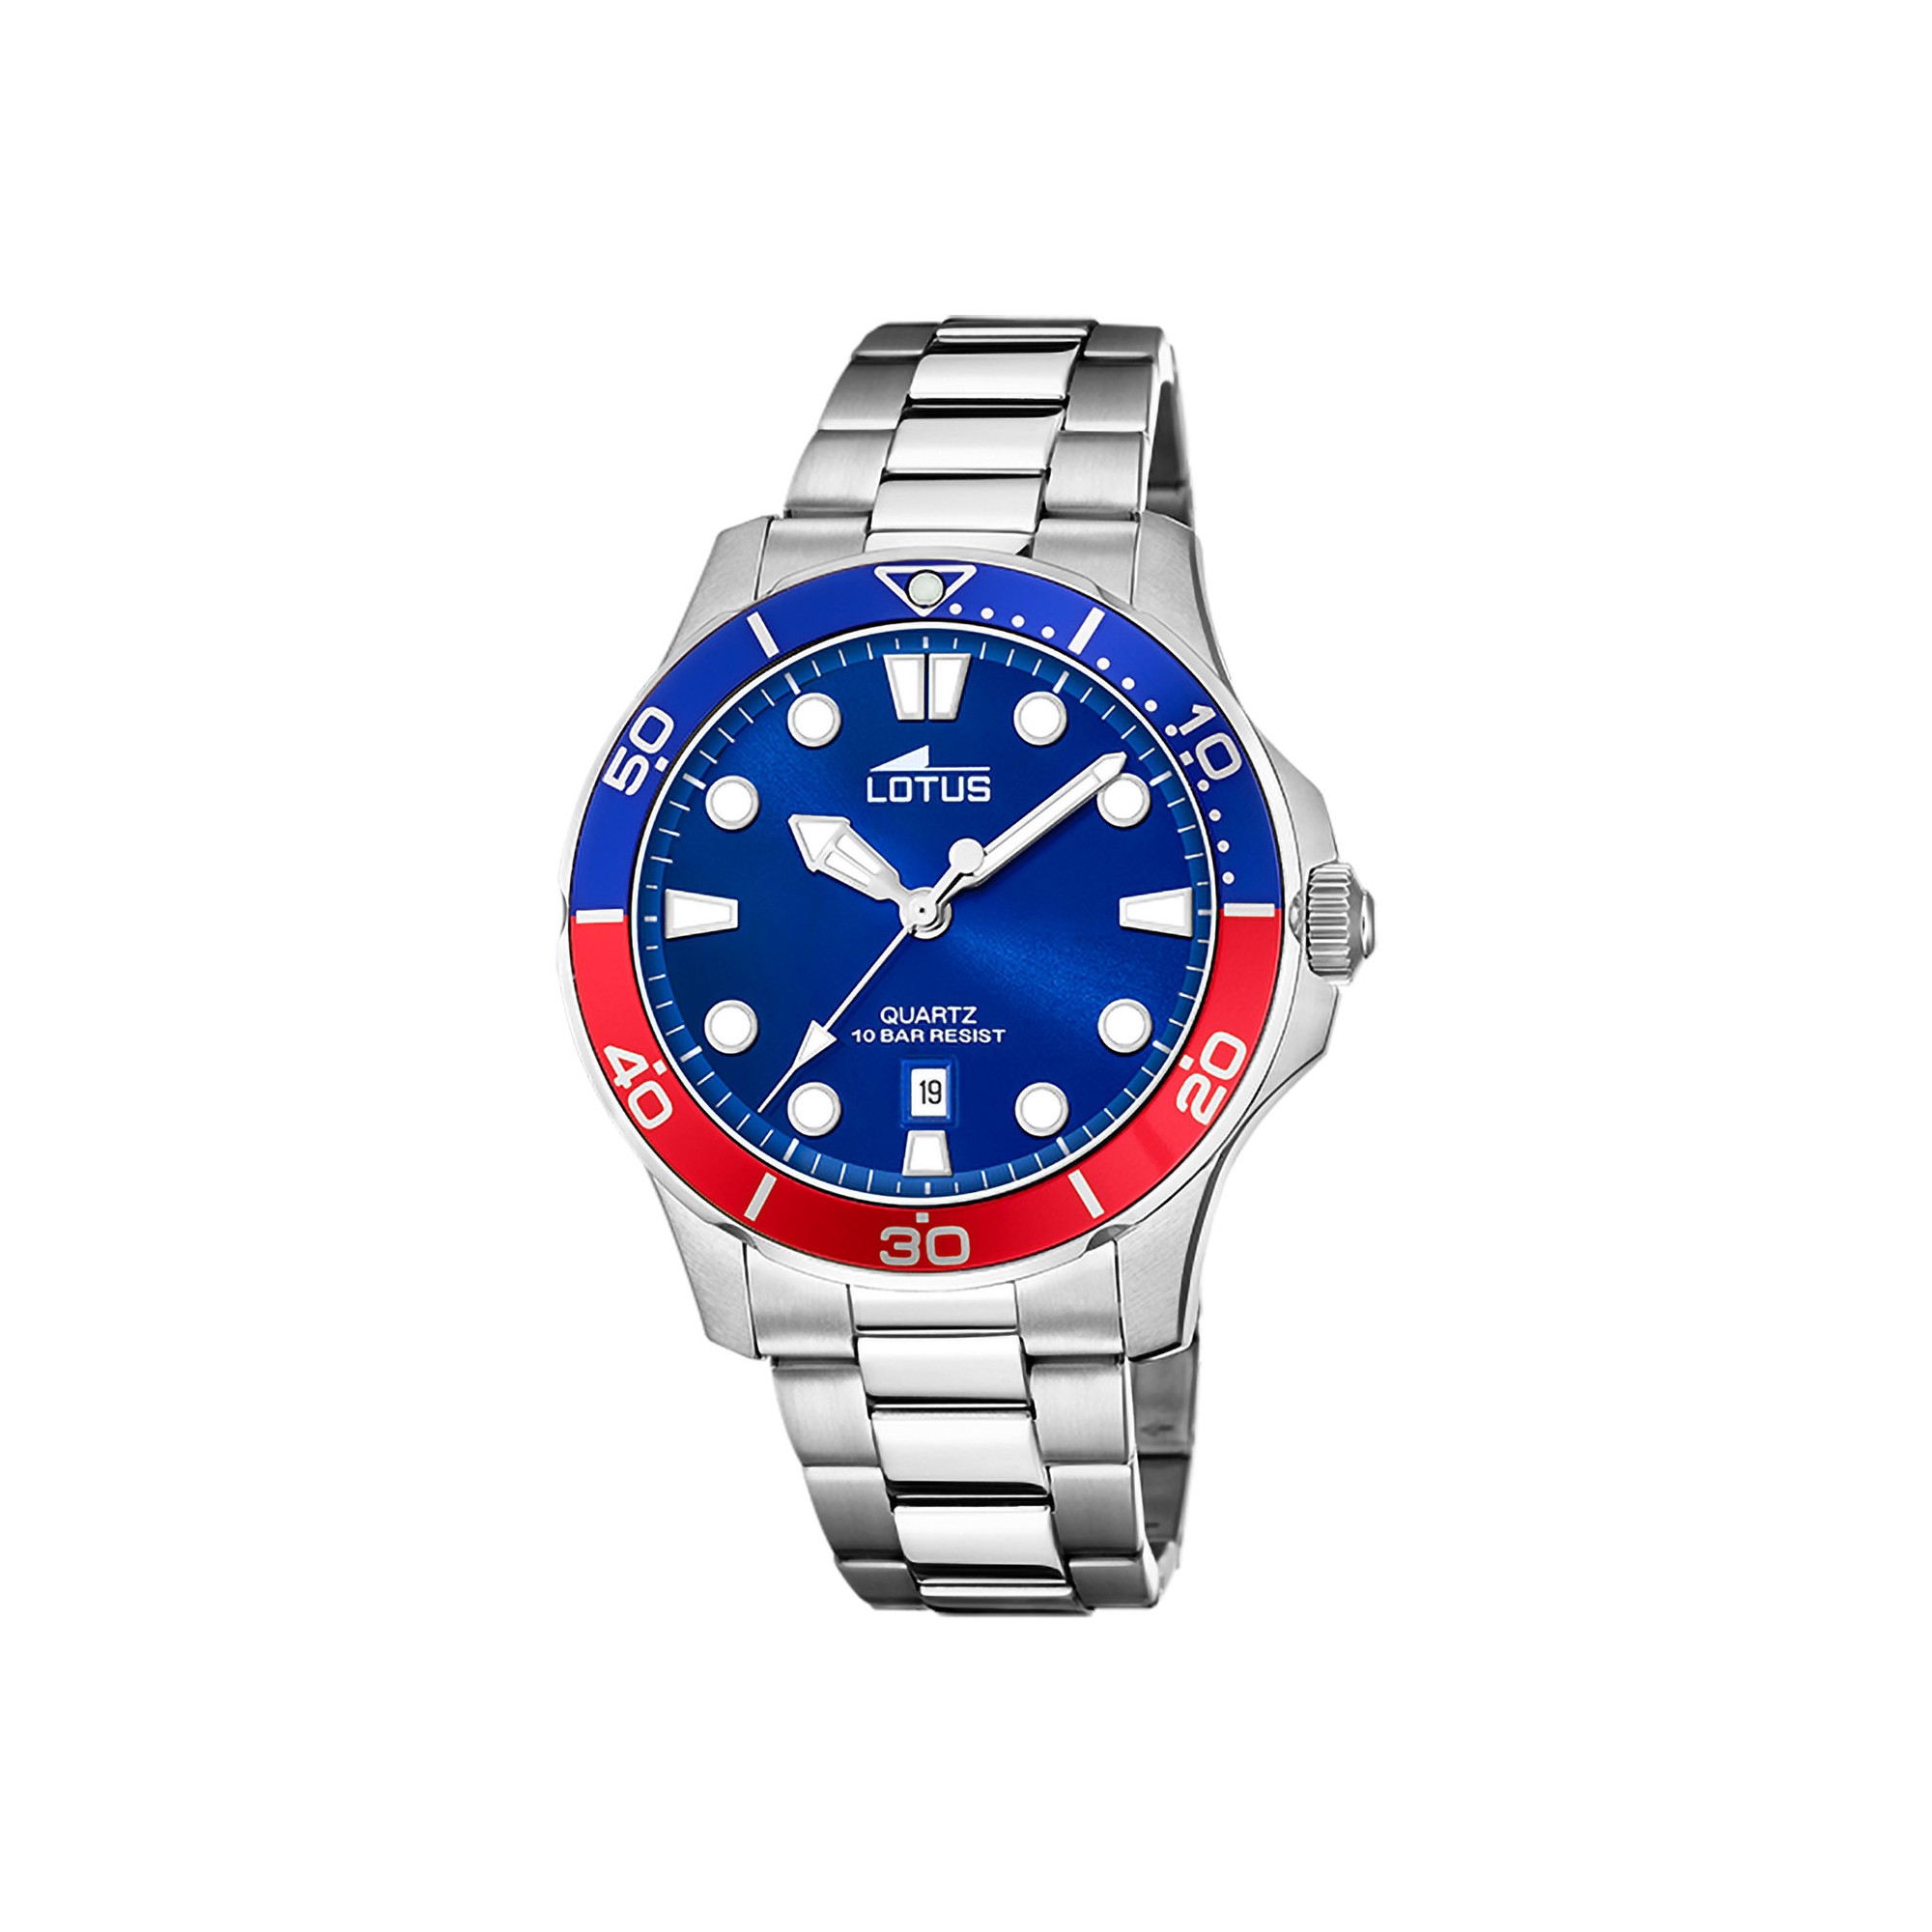 Reloj para hombre Lotus azul y rojo con brazalete de acero